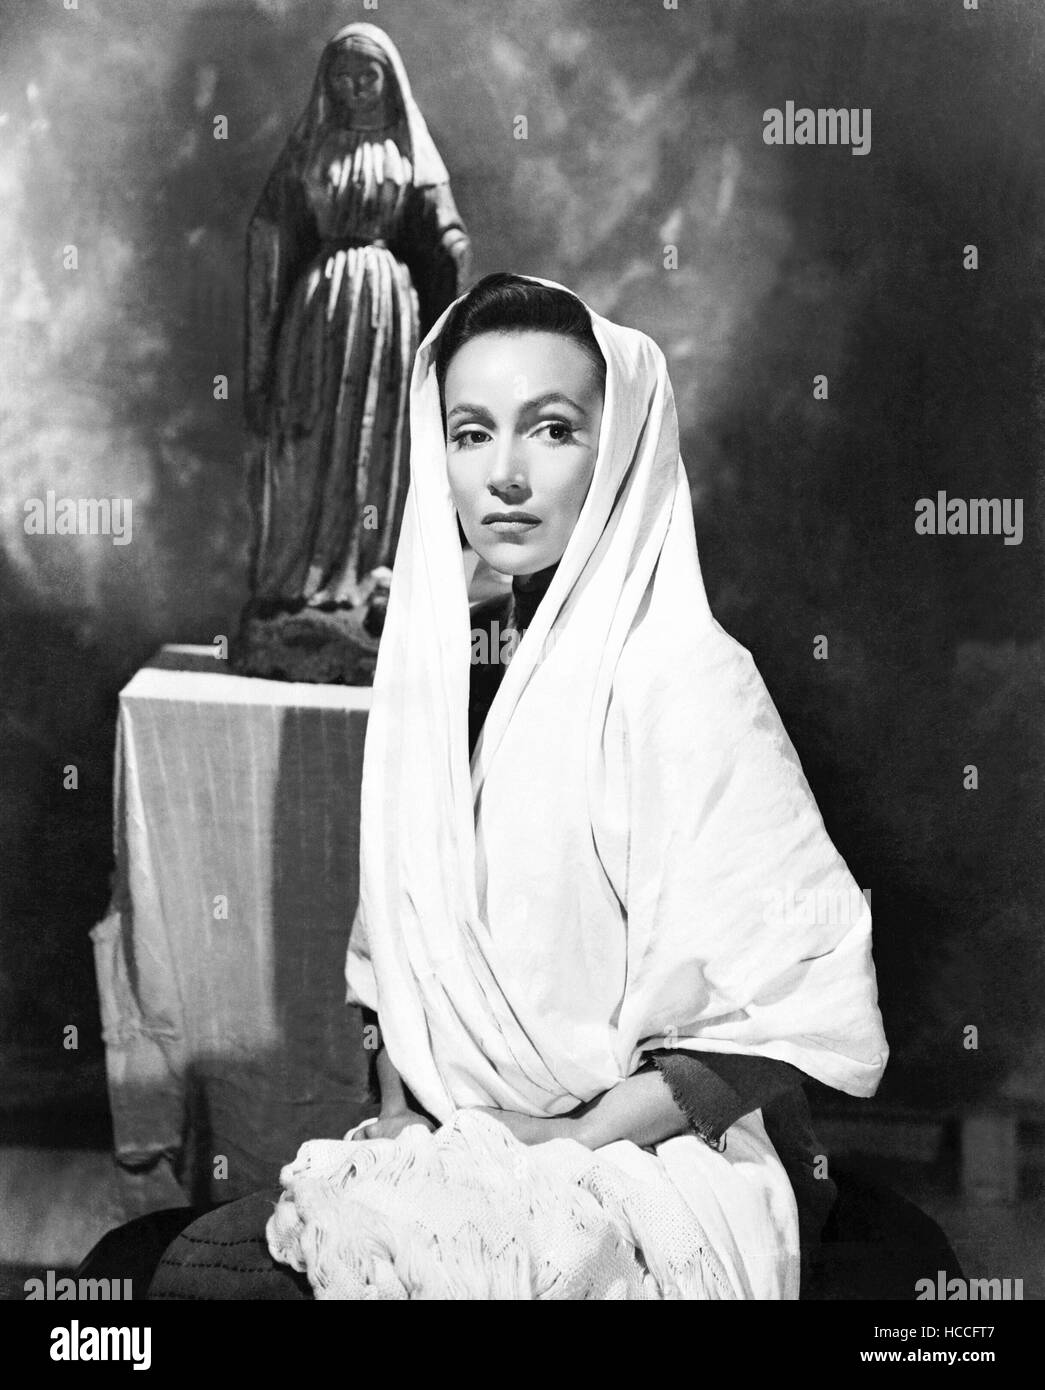 THE FUGITIVE, Dolores Del Rio, 1947 Stock Photo - Alamy